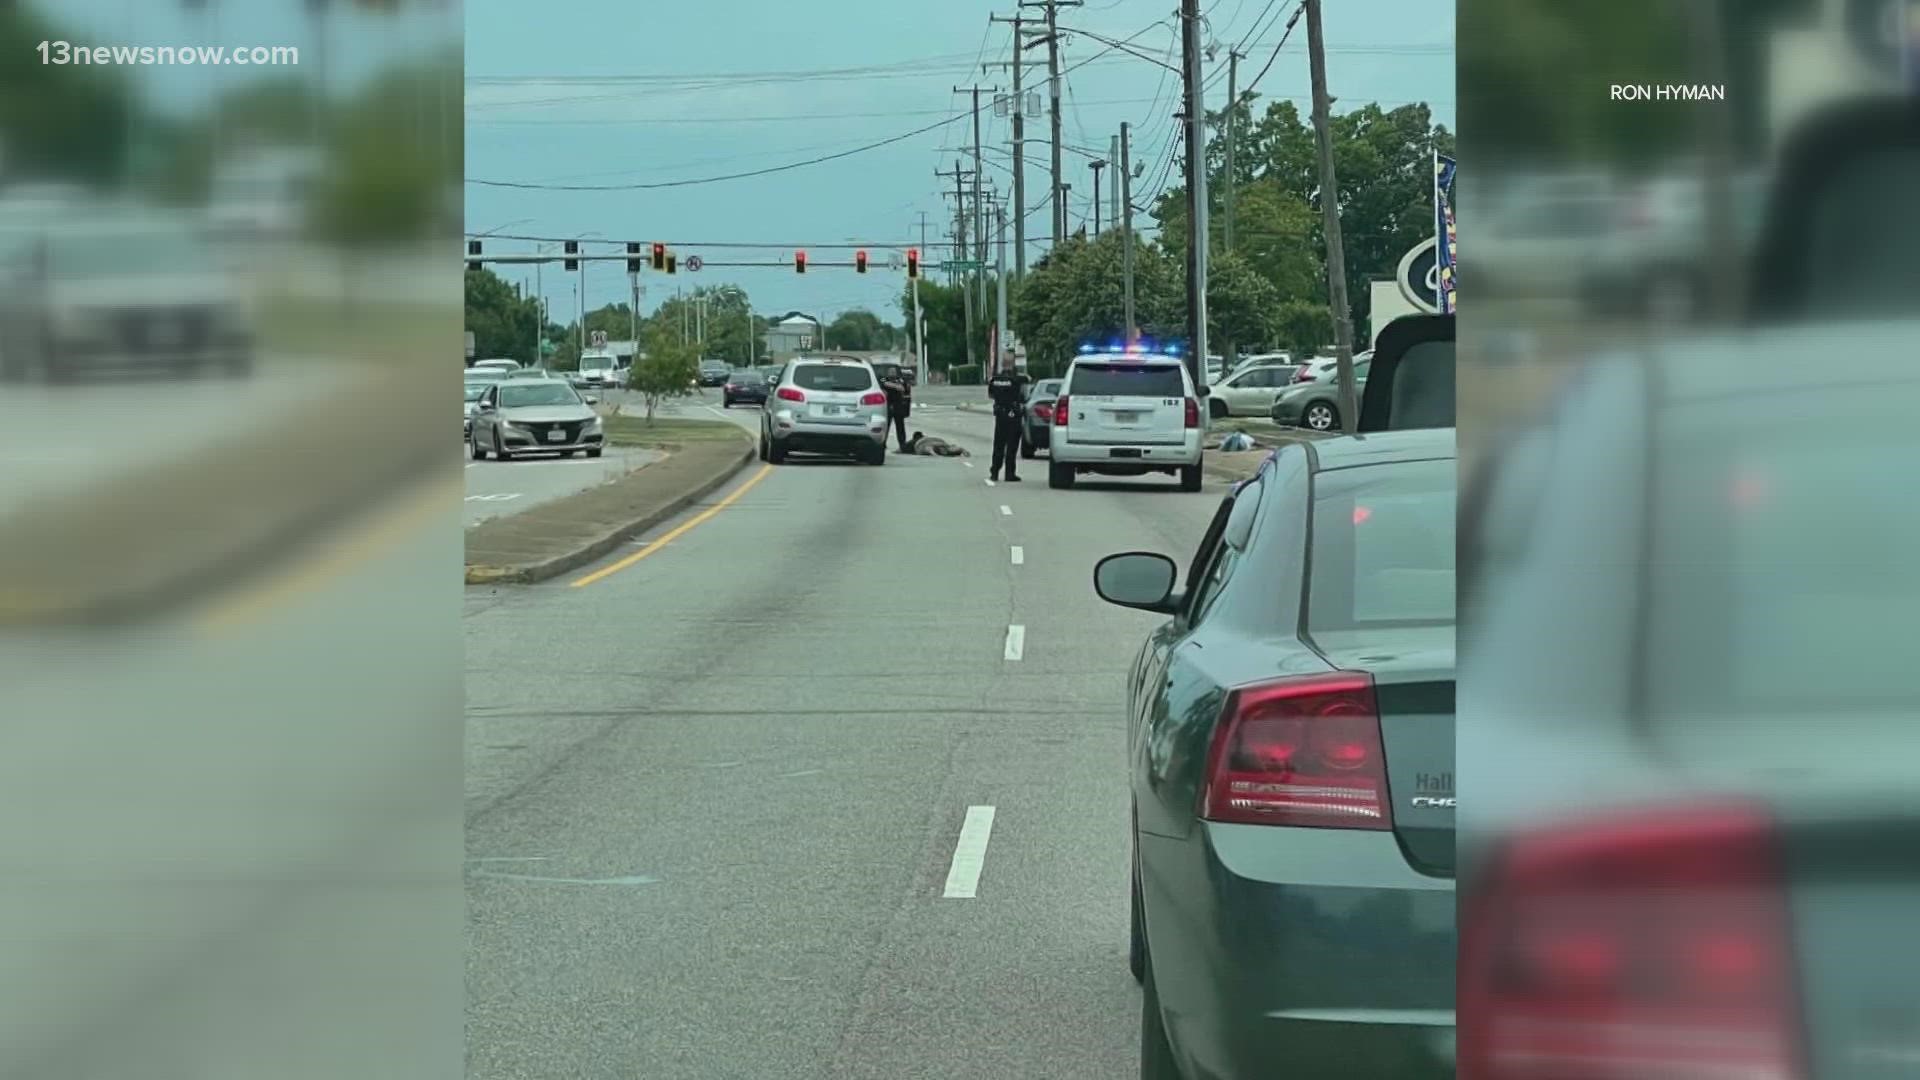 An officer was doing a traffic stop on Newtown Road, when he heard the gunshots.